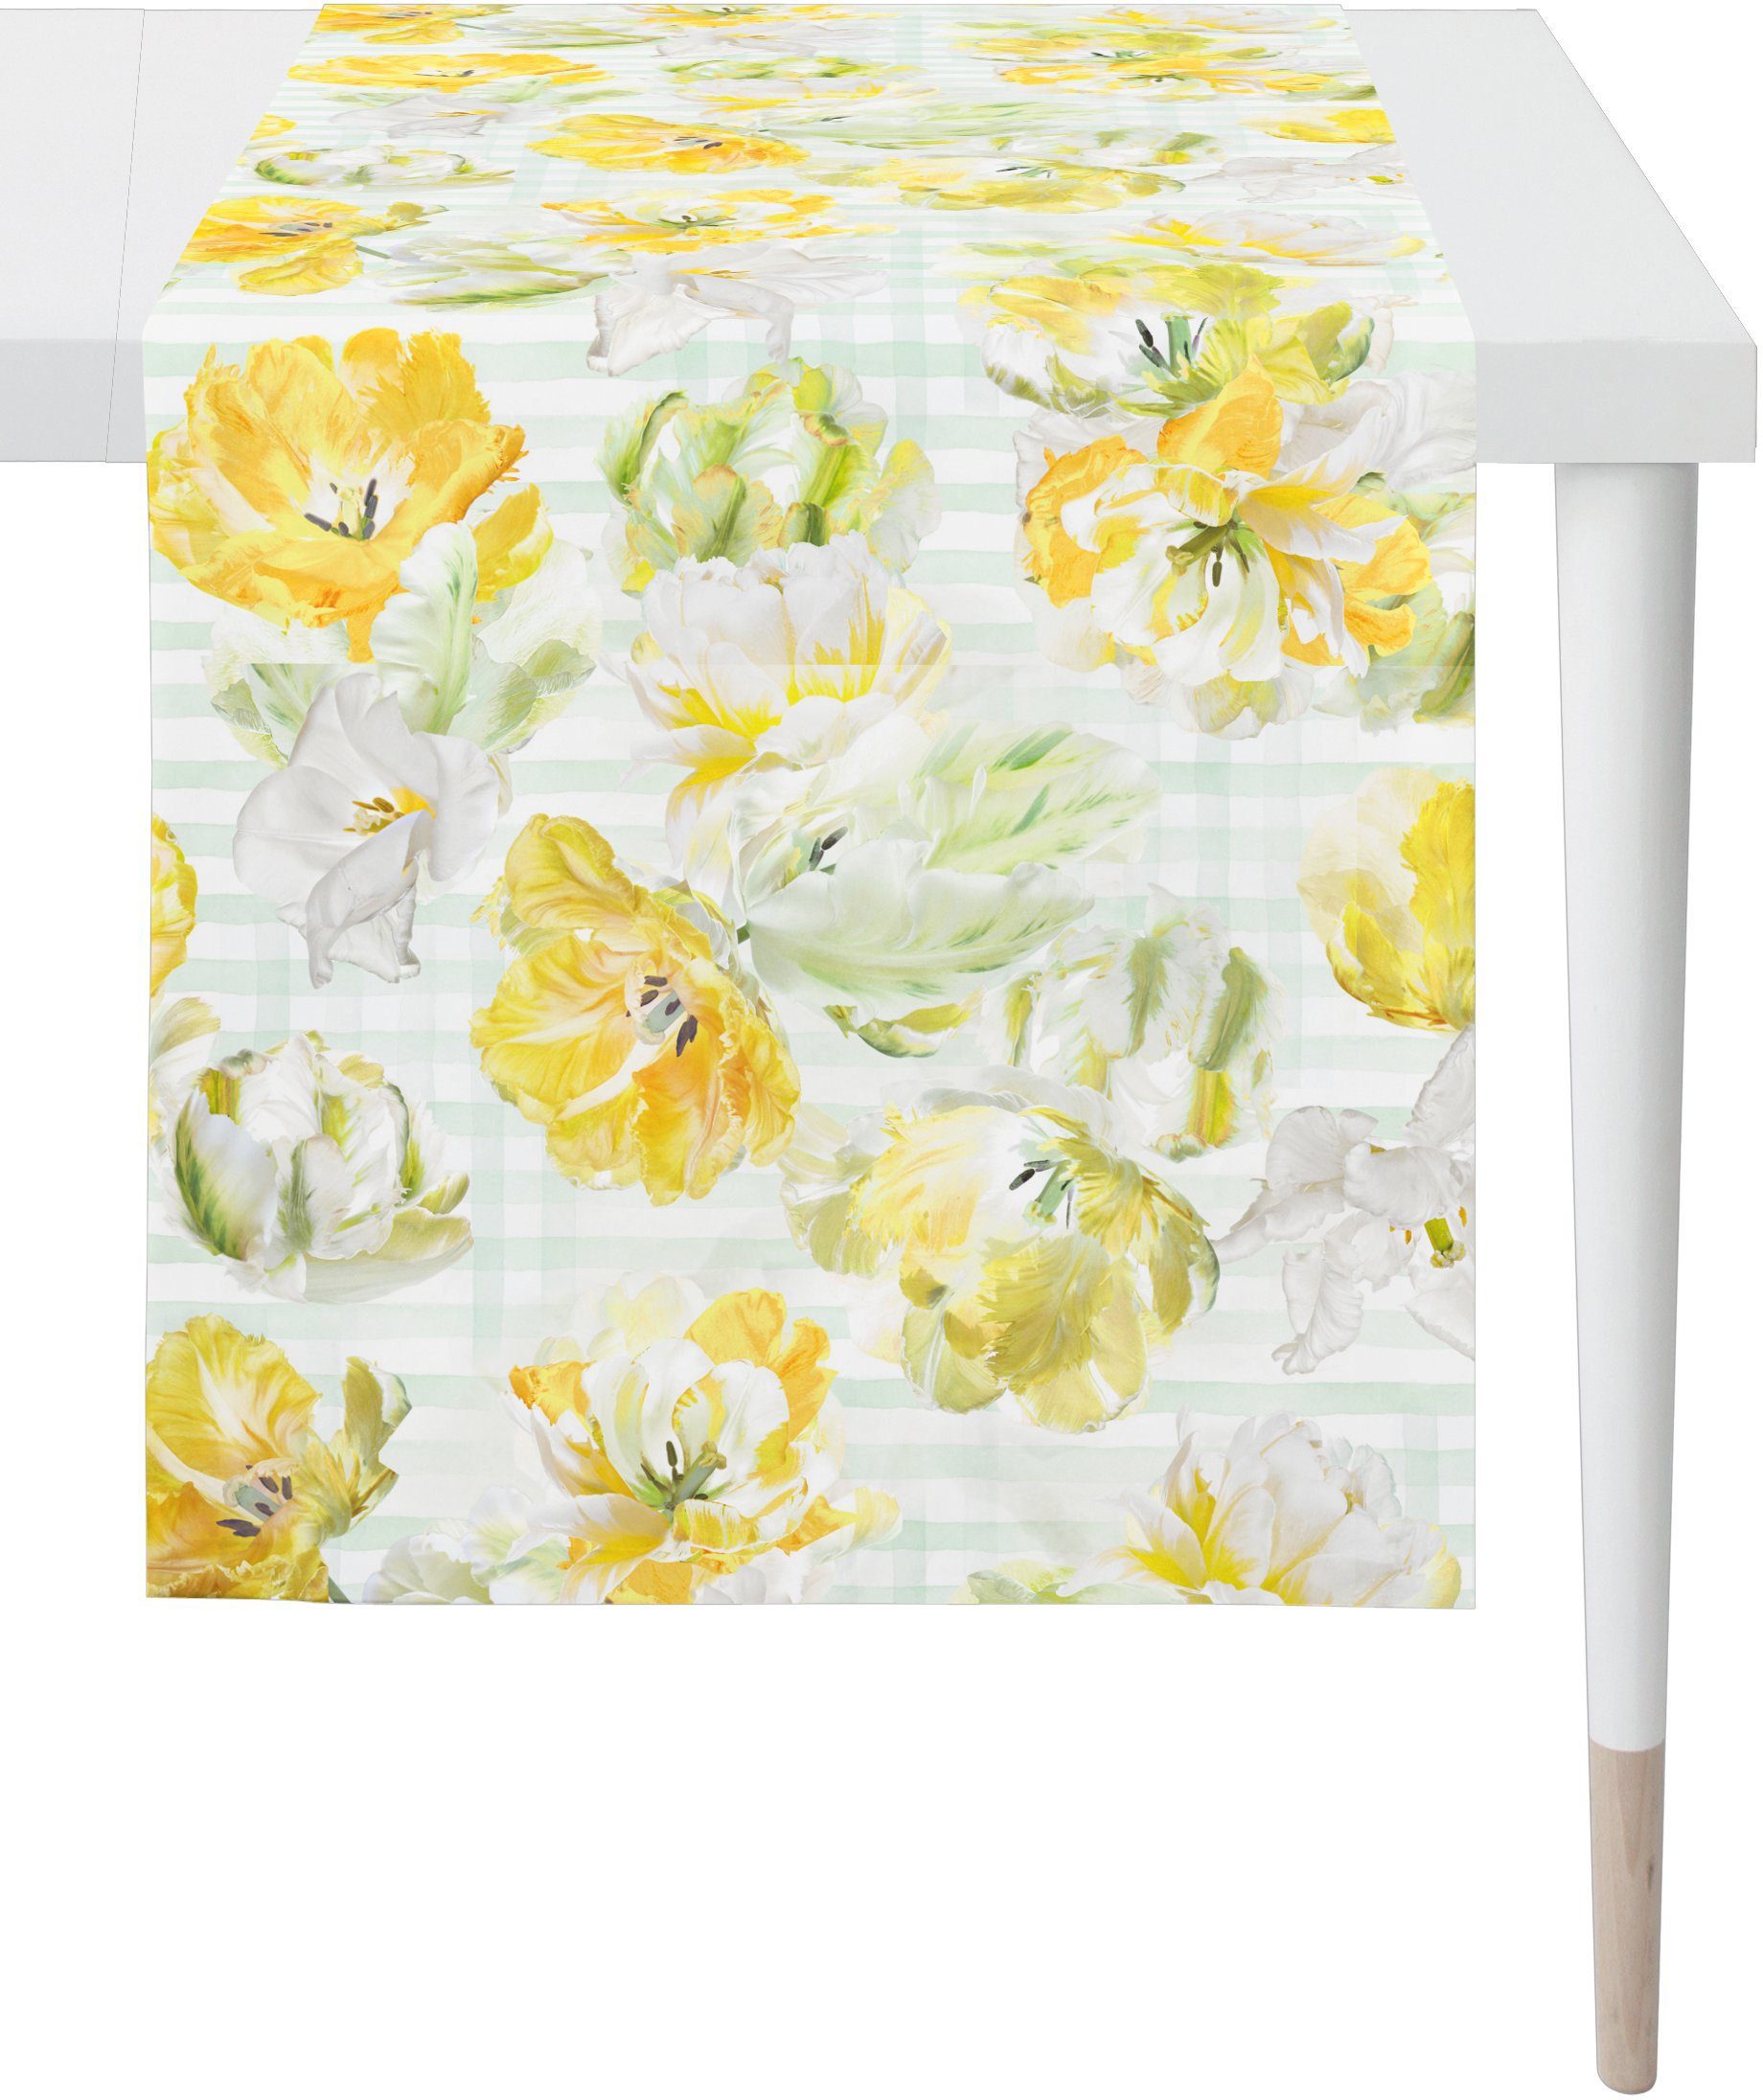 (1-tlg), Frühling Digitaldruck SPRINGTIME, Frühjahrsdeko, Tischläufer APELT 6405 weiß/gelb/natur